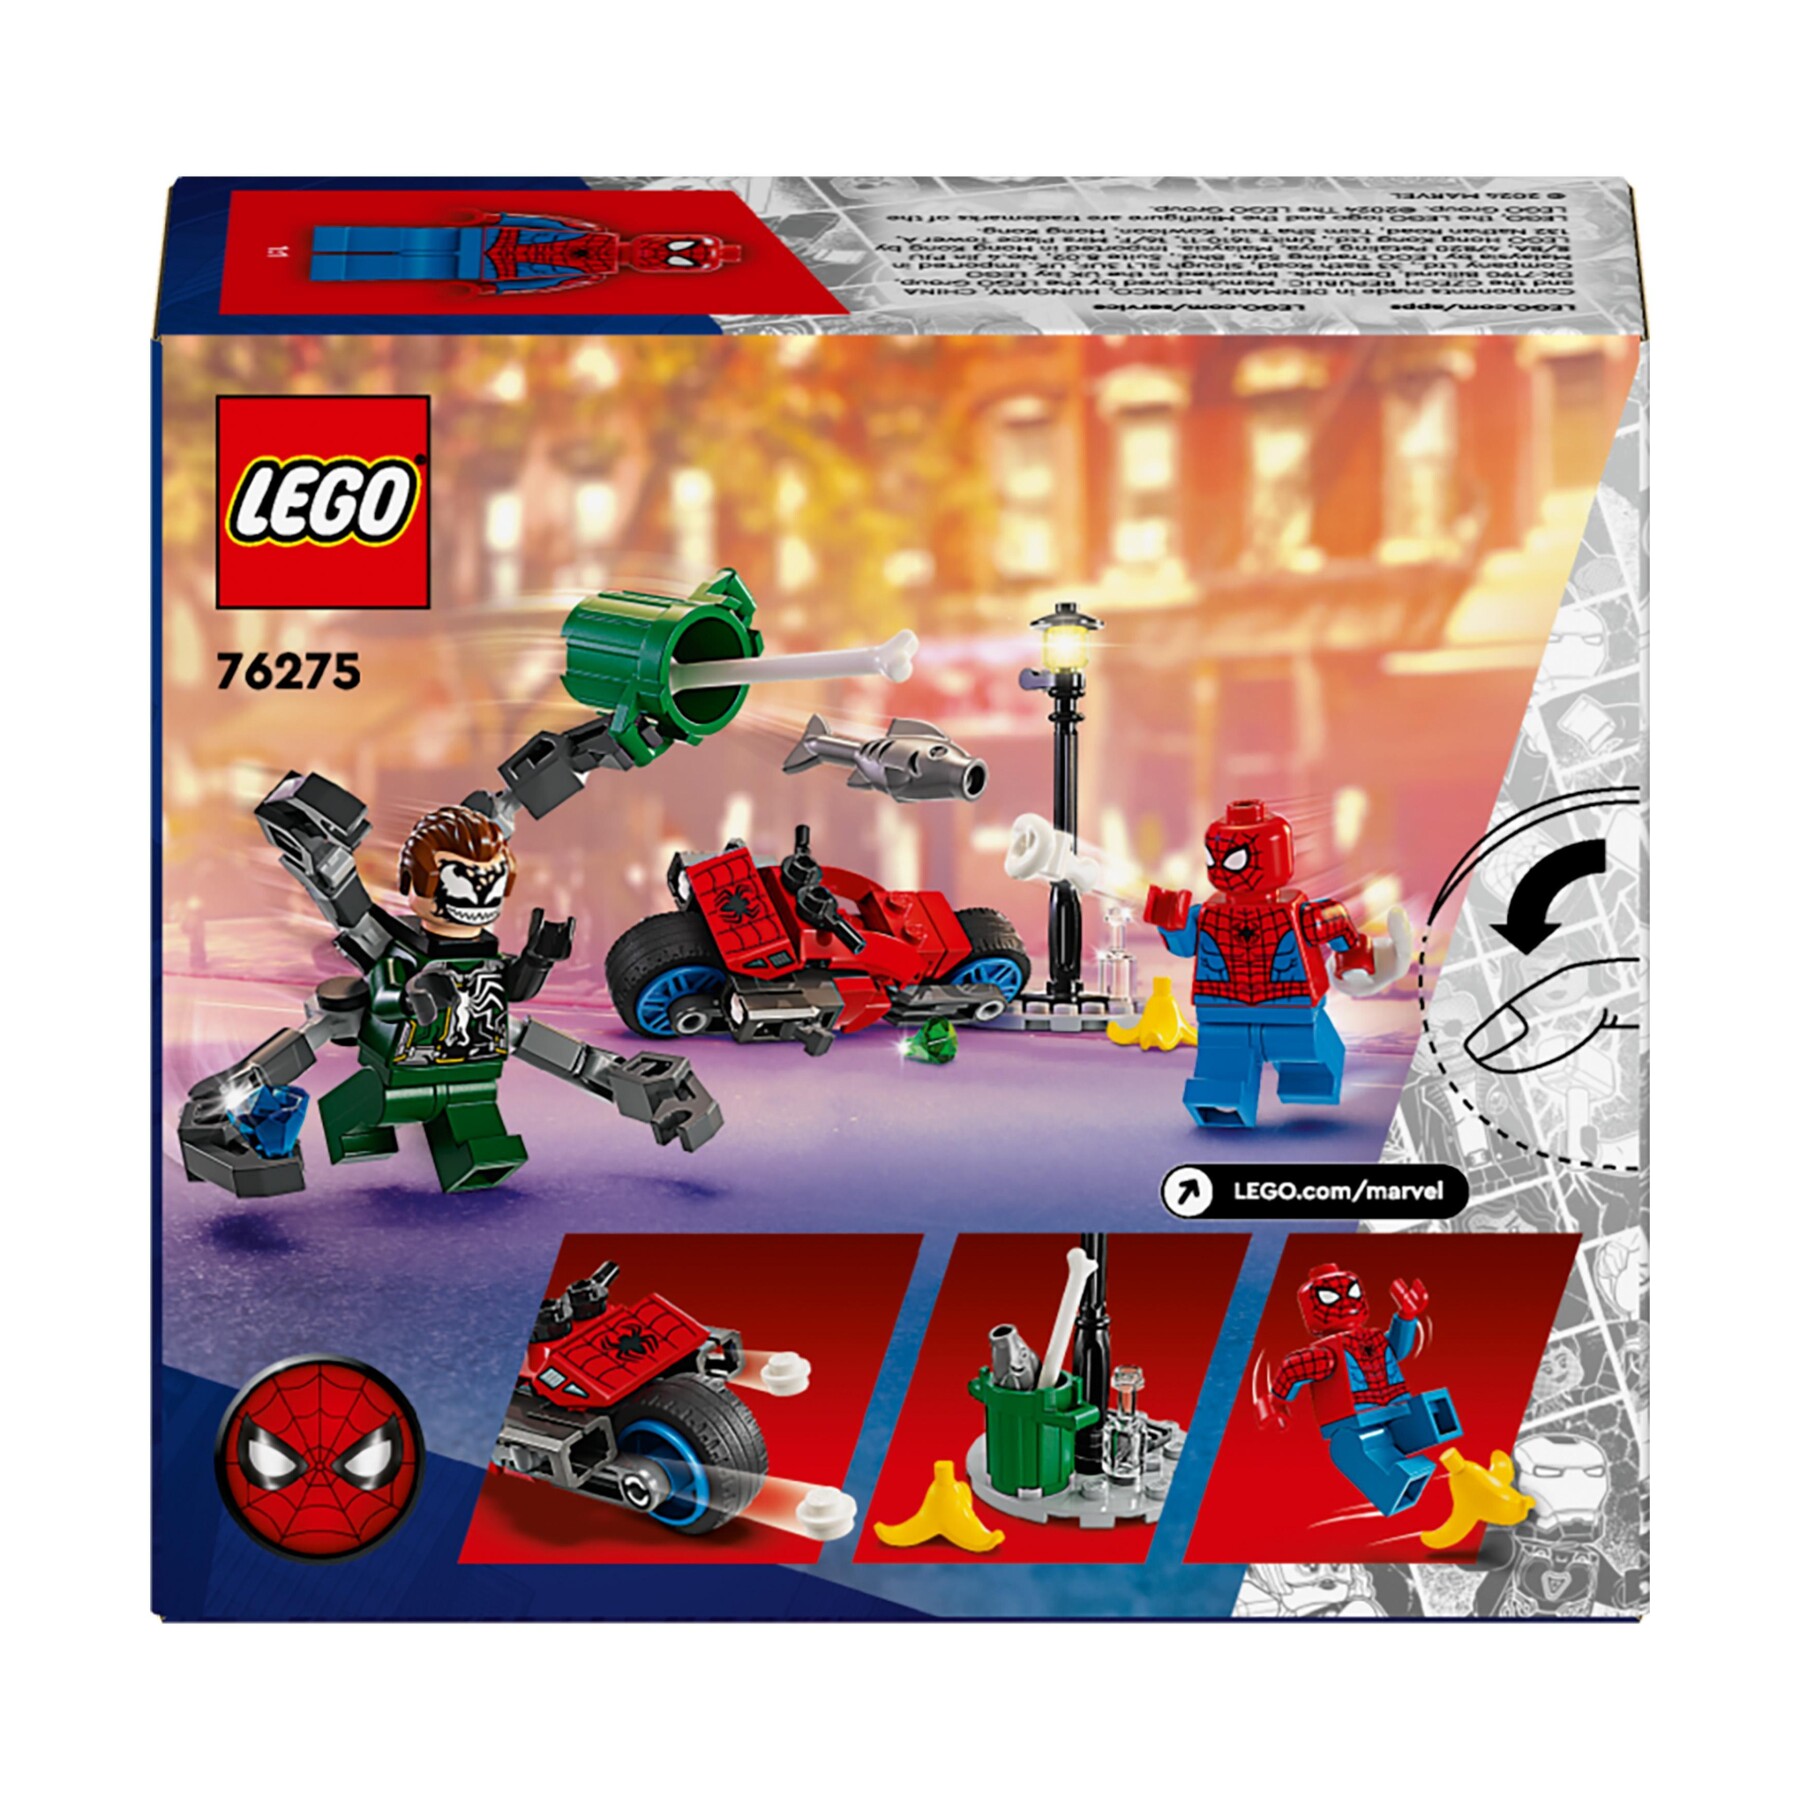 Lego marvel 76275 inseguimento sulla moto: spider-man vs. doc ock, motocicletta giocattolo spara ragnatele per bambini 6+ anni - LEGO SUPER HEROES, Avengers, Spiderman